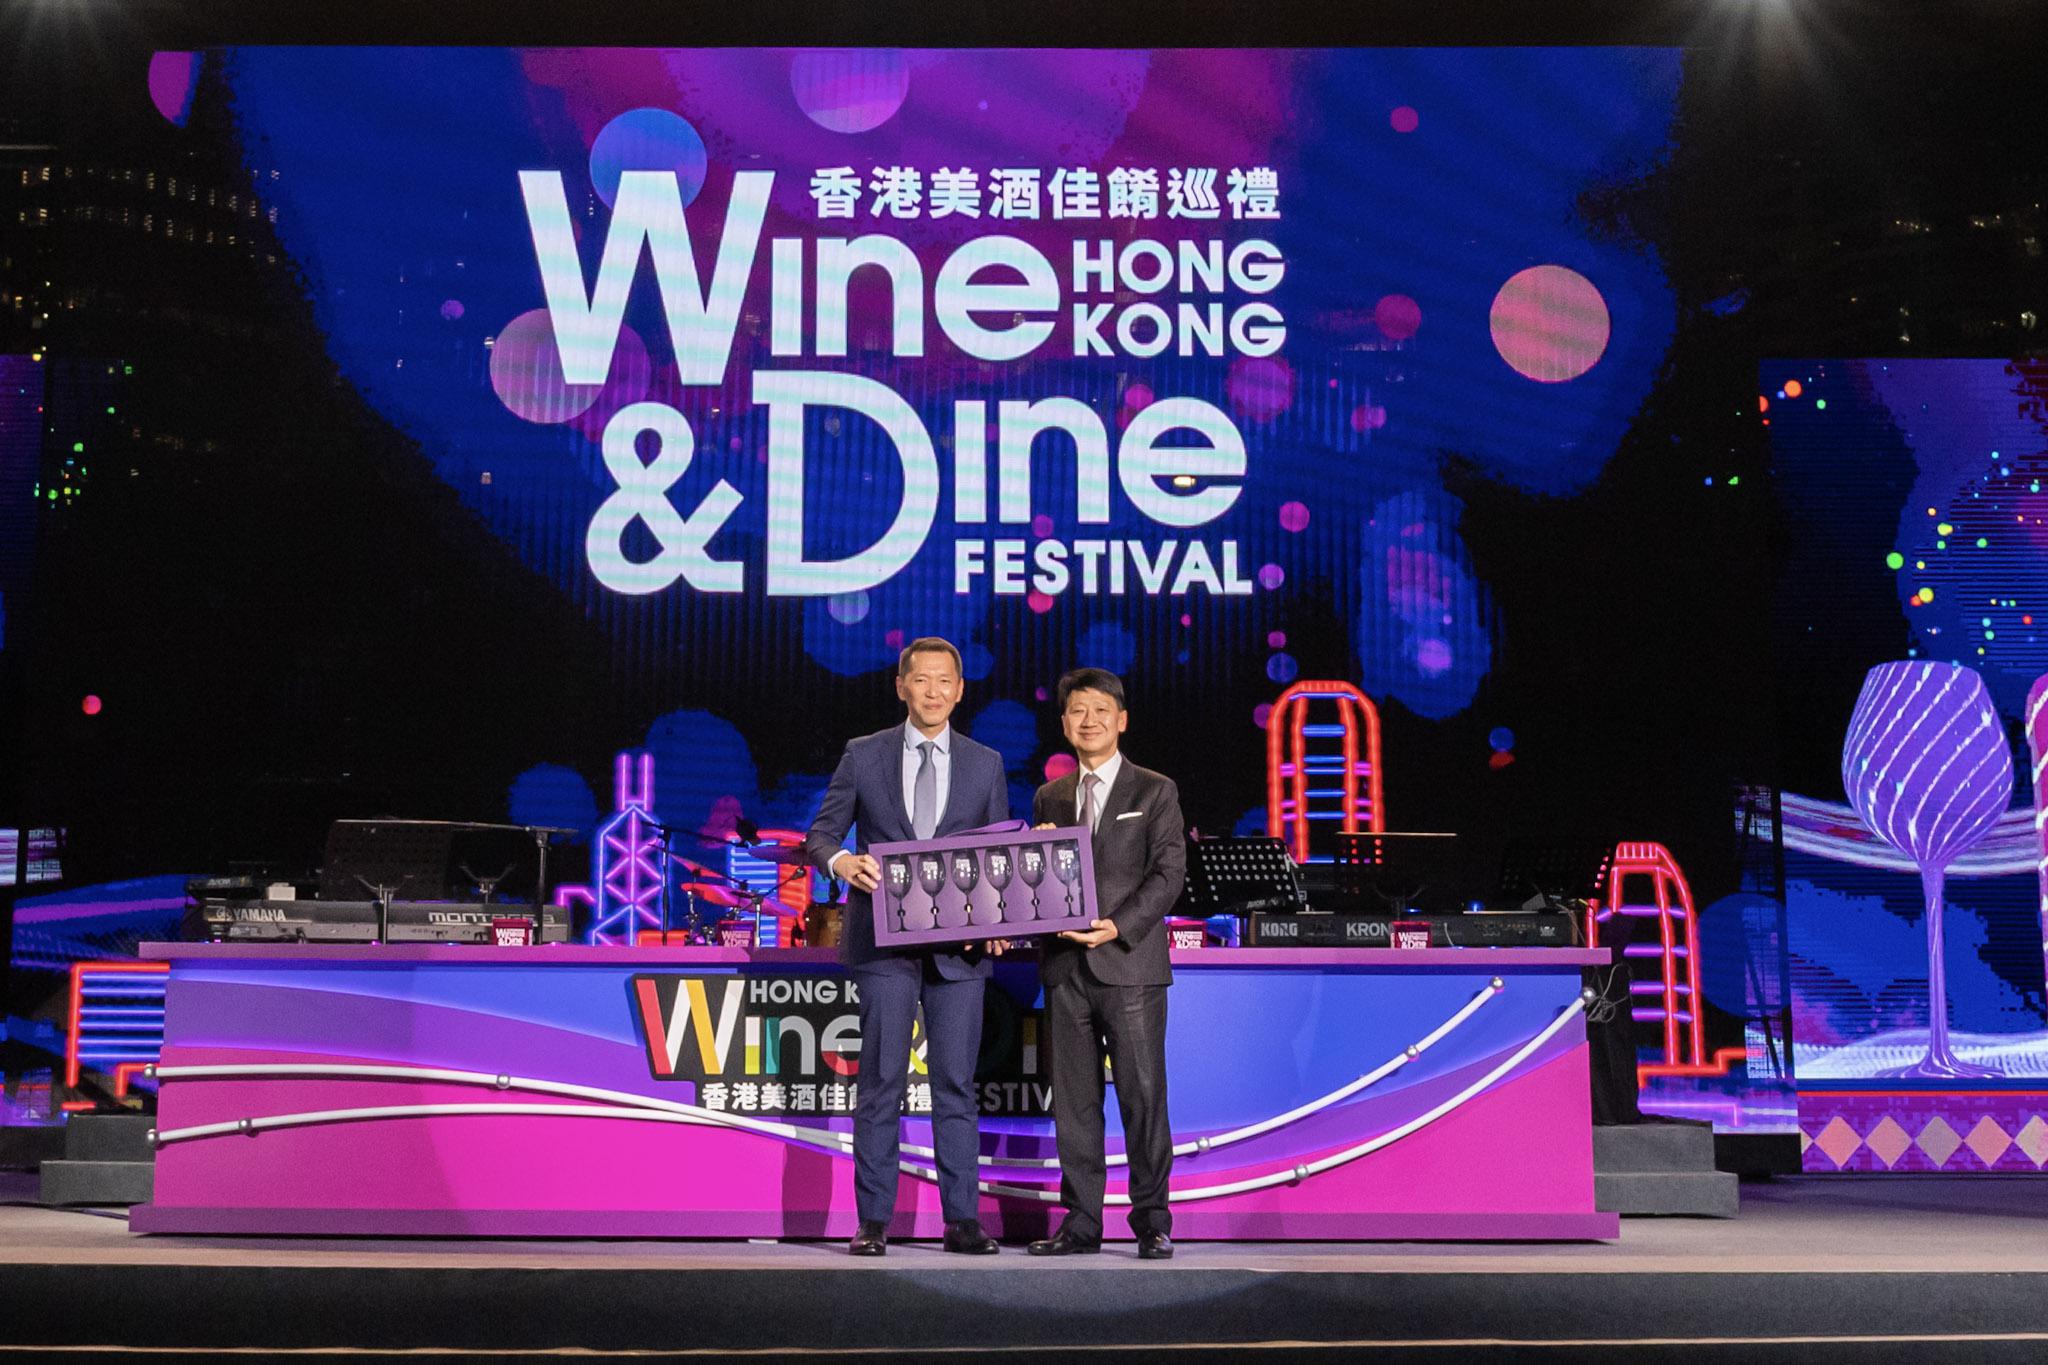 萬通保險行政總裁葉嘉年先生(左)出席「香港美酒佳餚巡禮」開幕典禮，並接受主禮嘉賓香港旅遊發展局主席彭耀佳博士致送紀念品。